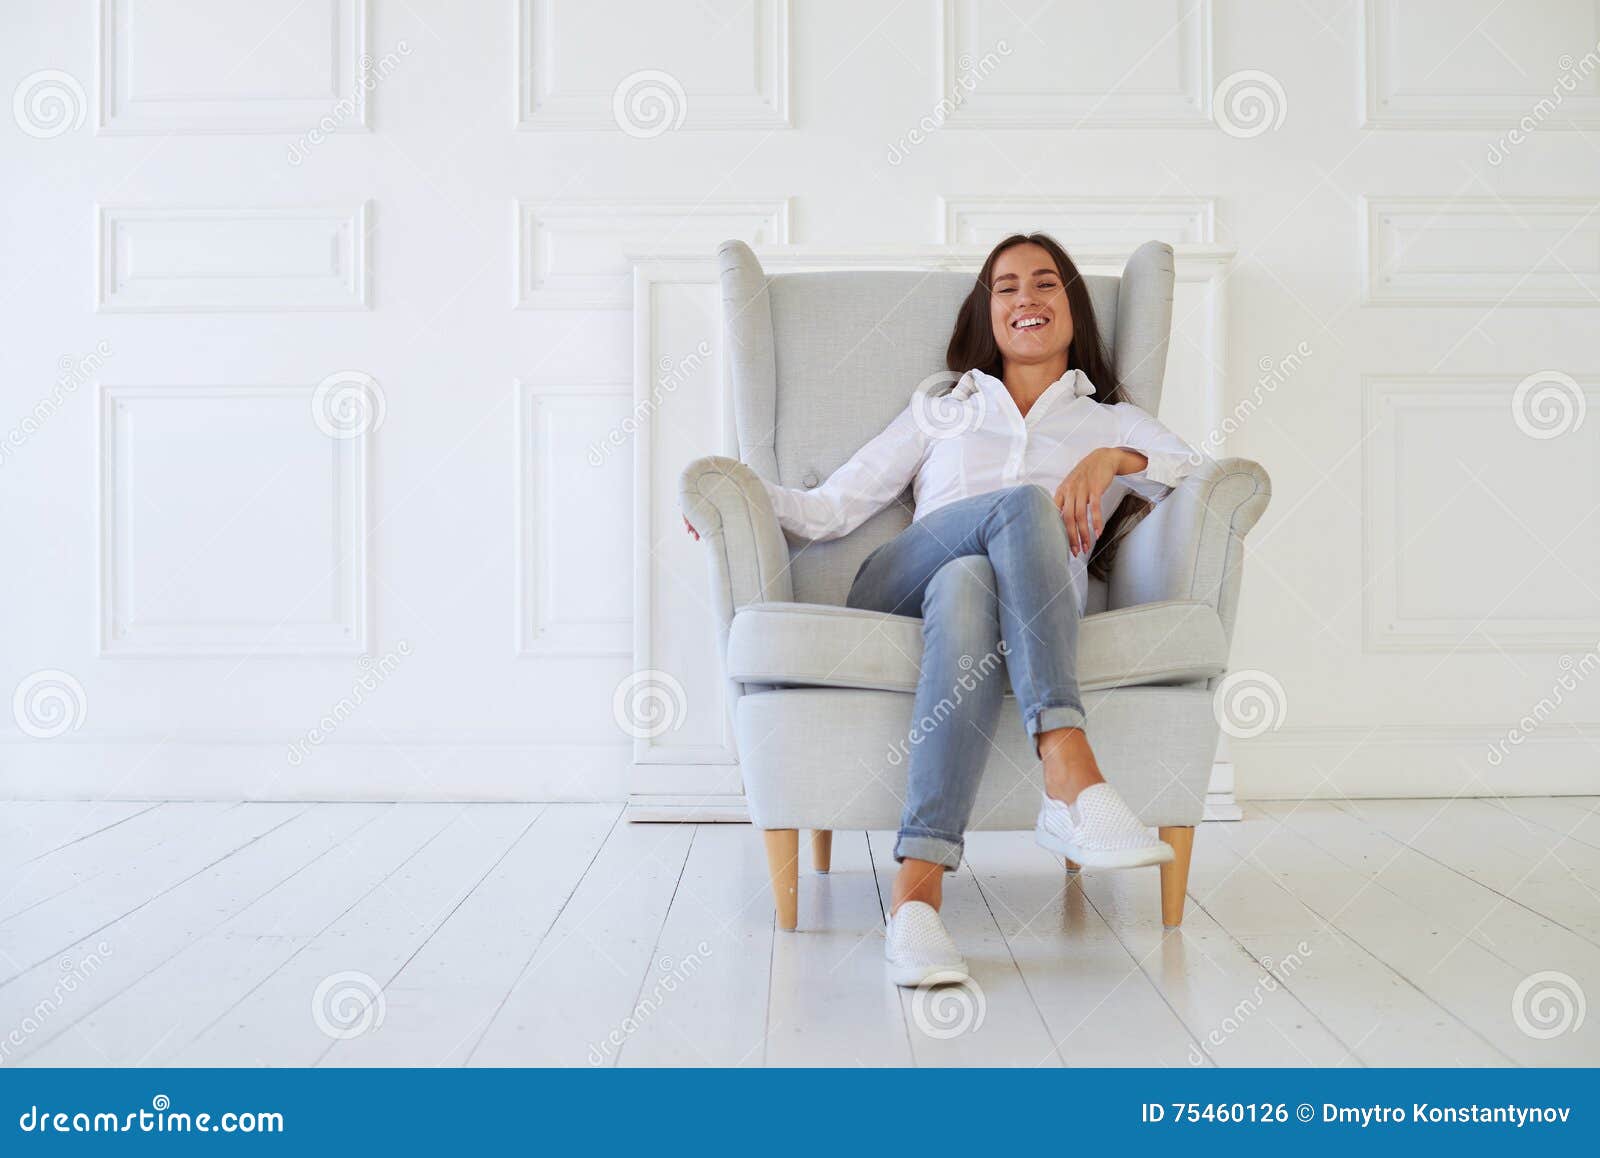 А я посижу напротив в кресле песня. Девушка в белом кресле улыбается. Снимается ди на кресле ФО ФО капюшон ?. Статус с толстой женщиной сидящей в кресле.